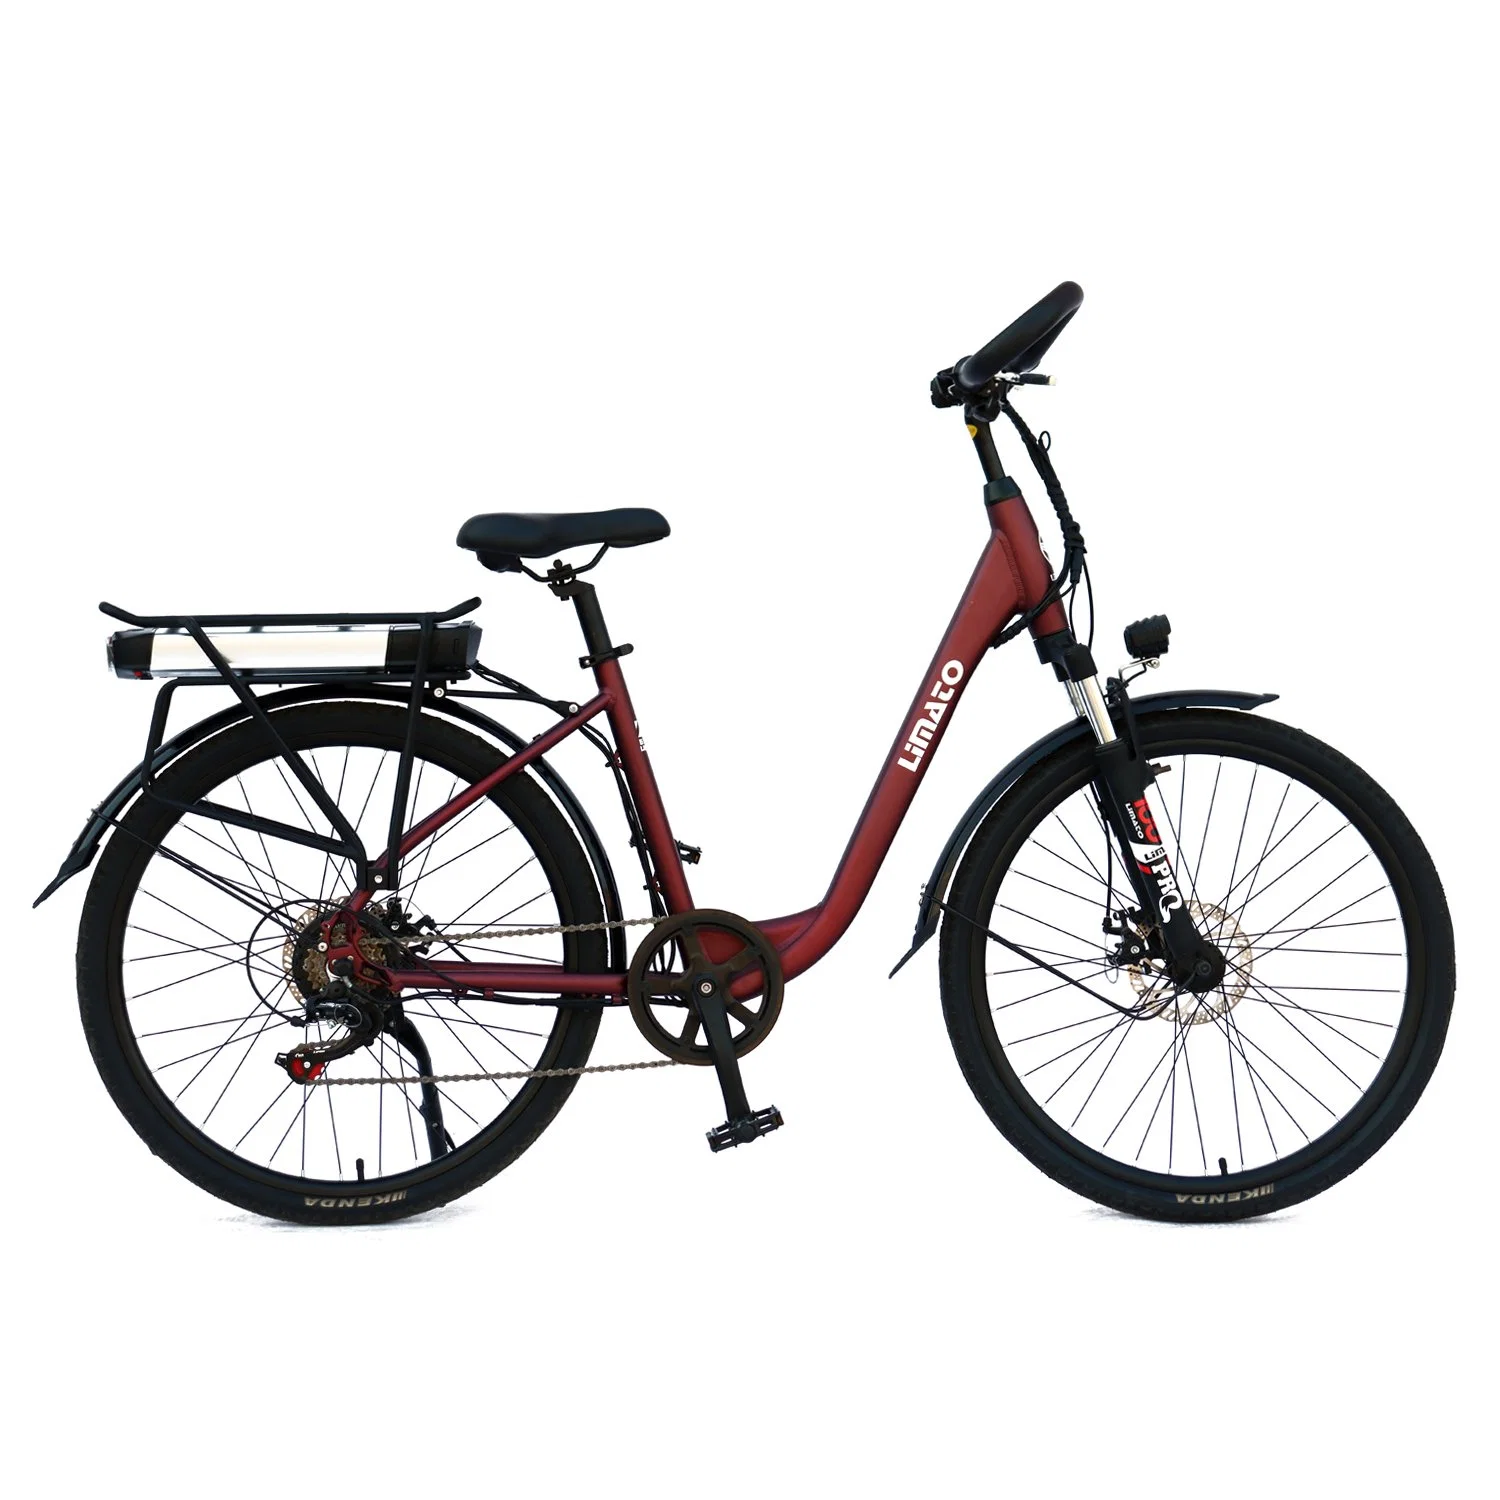 Heißer Verkauf China Cargo Elektro-Bike 8 Geschwindigkeit 48V Lithium Batterie 350W 26 Zoll Road City eBike Elektro Fahrrad für Frau